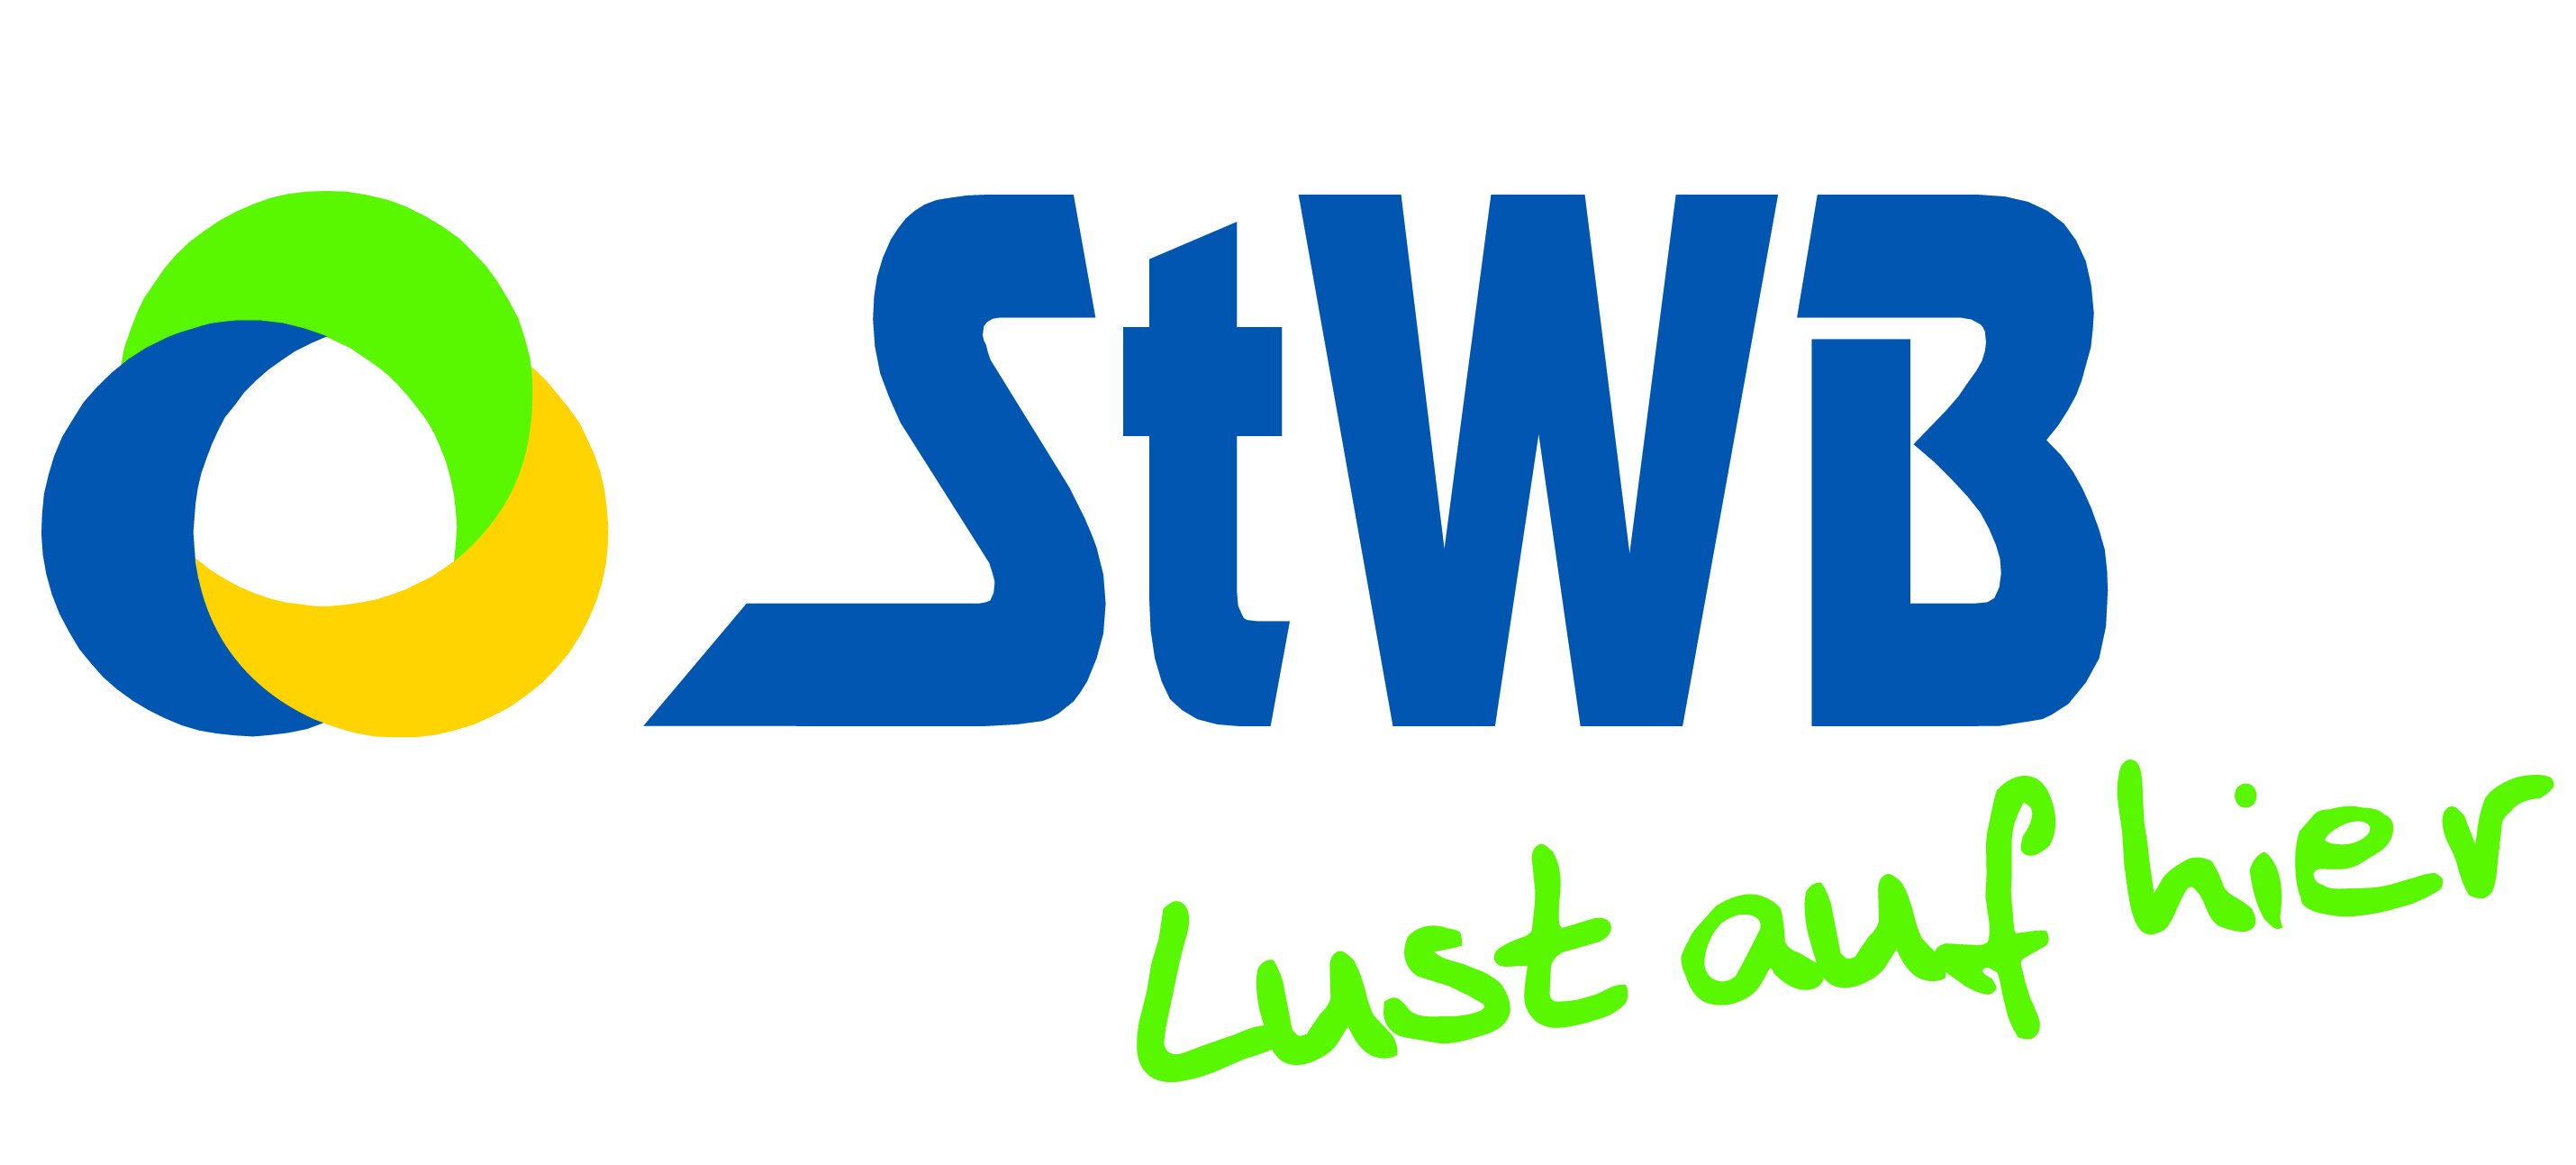 StWB Stadtwerke Brandenburg an der Havel GmbH & Co. KG